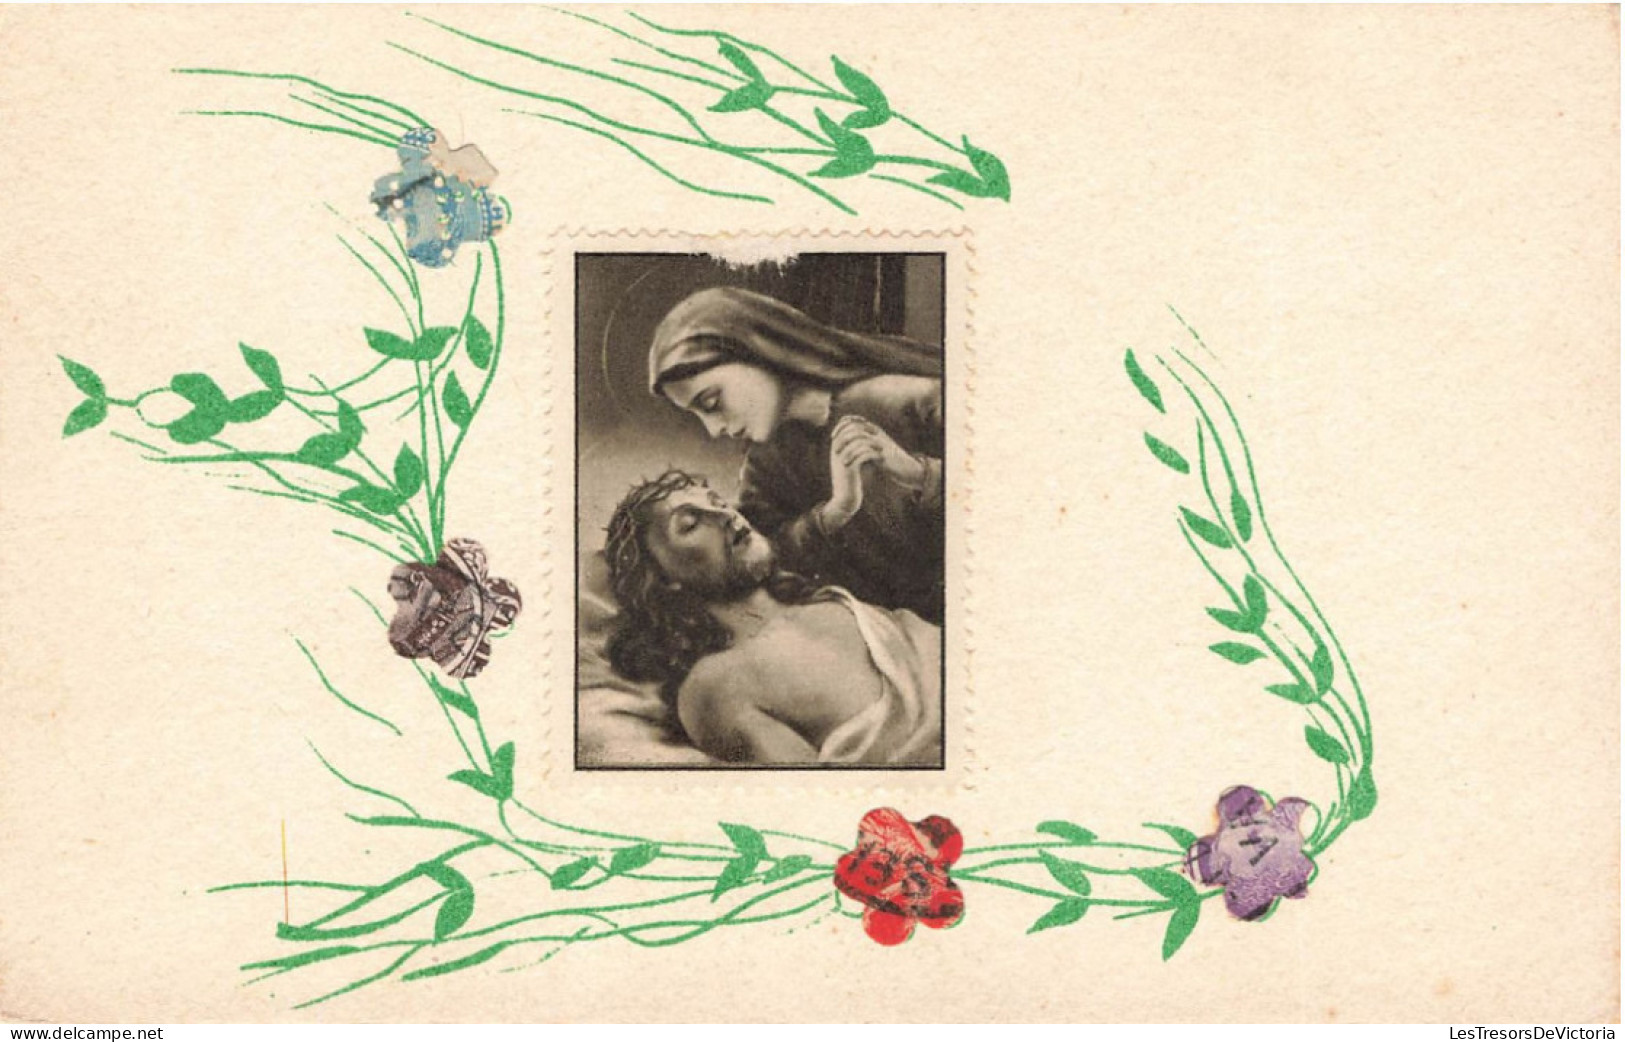 TIMBRES - Marie Pleurant Sur Le Corps Du Christ - Carte Postale Ancienne - Timbres (représentations)